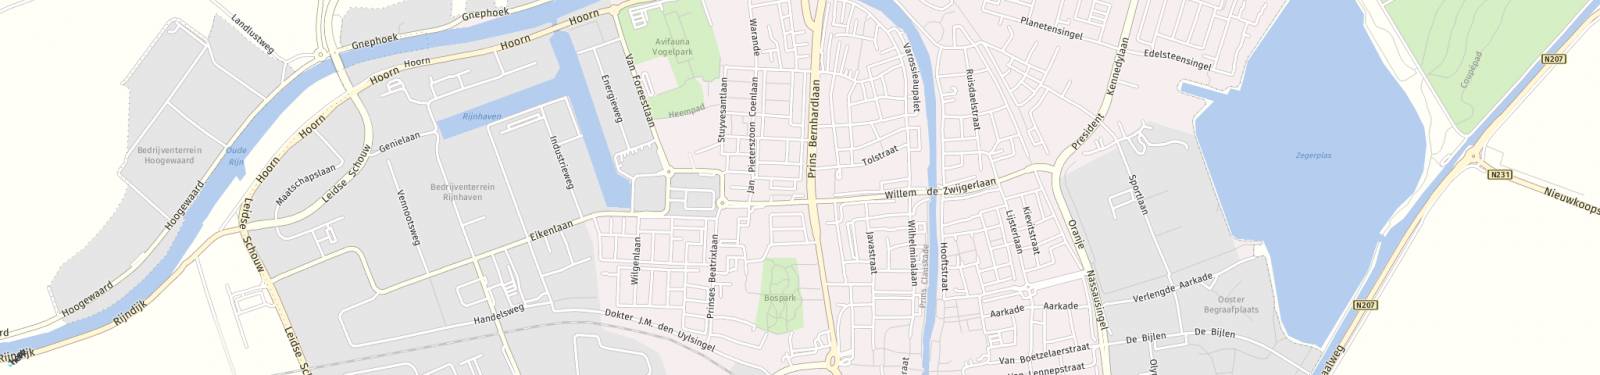 Kaart met locatie Appartement Stadhoudersplein